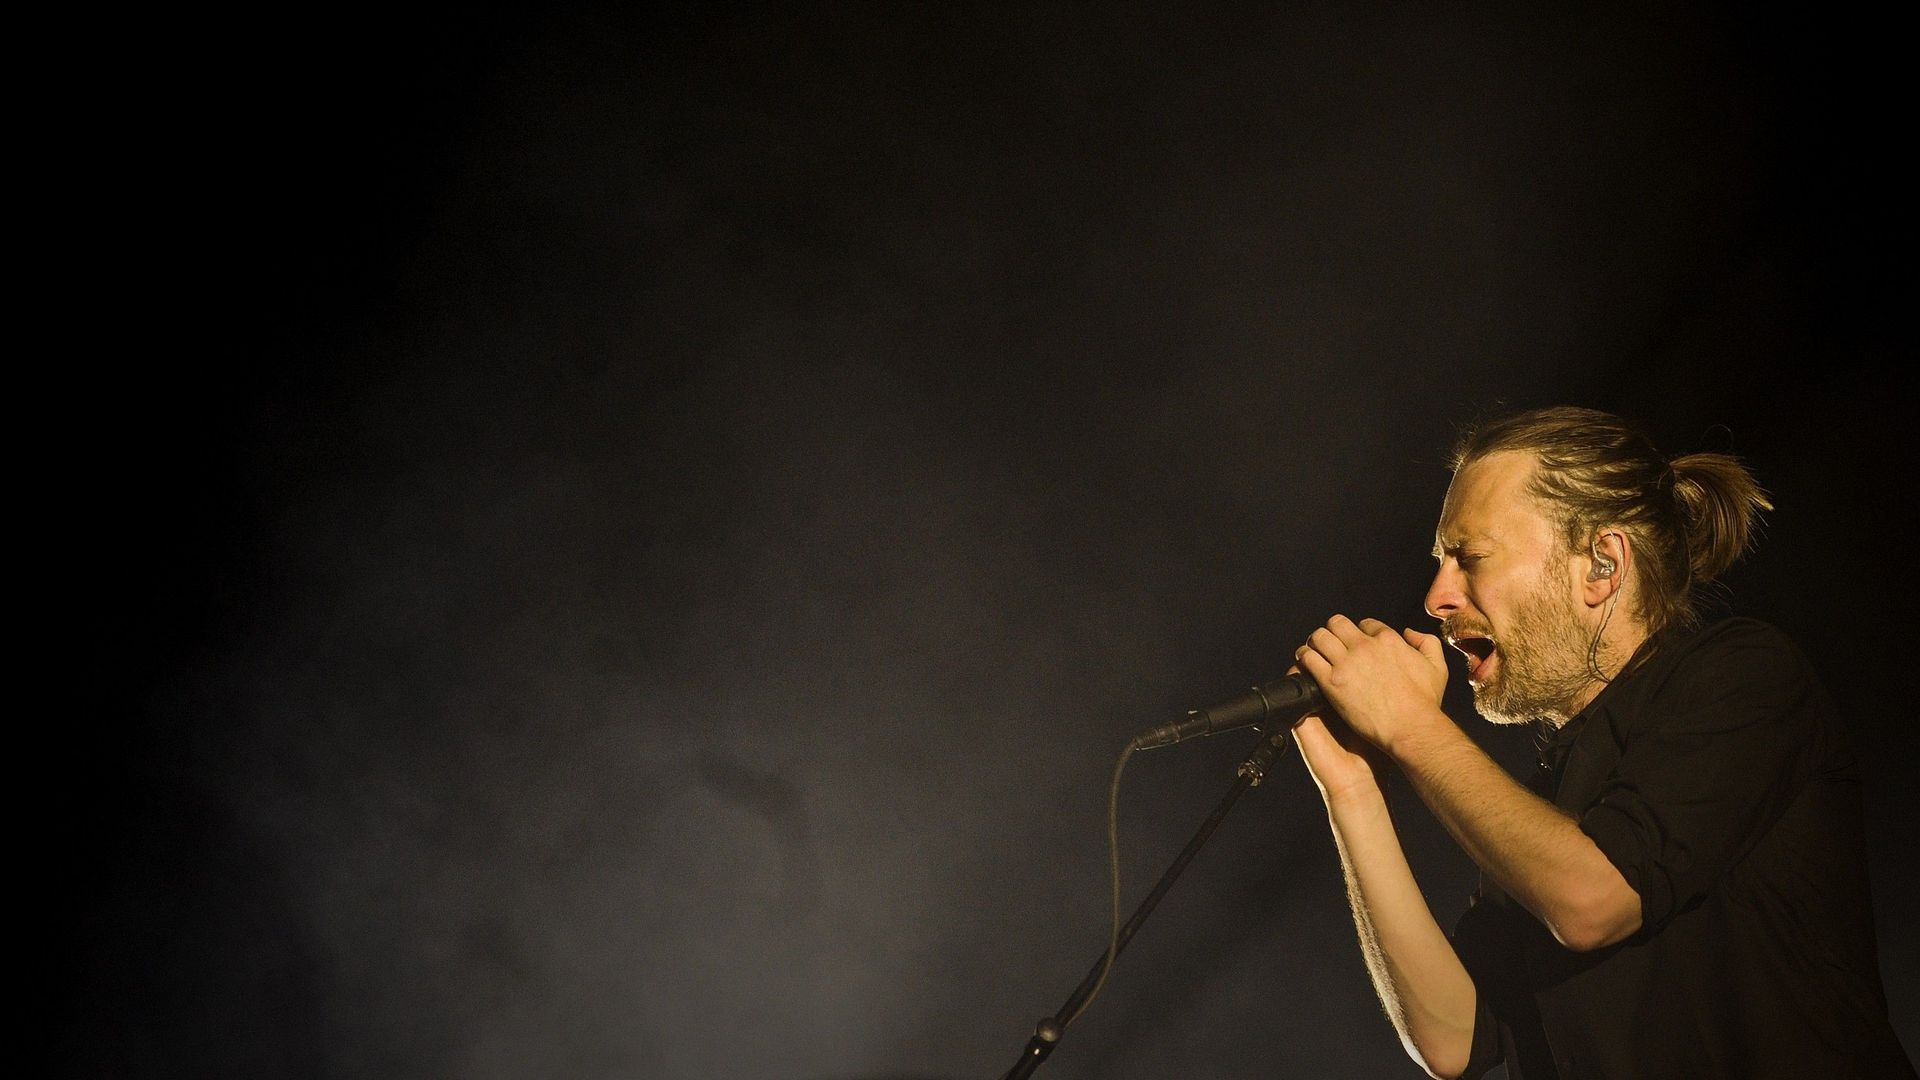 Le groupe mené par Thom Yorke n'était pas monté sur scène ensemble depuis la fin de leur dernière tournée, qui s'est achevée en novembre 2012 à Melbourne, en Australie